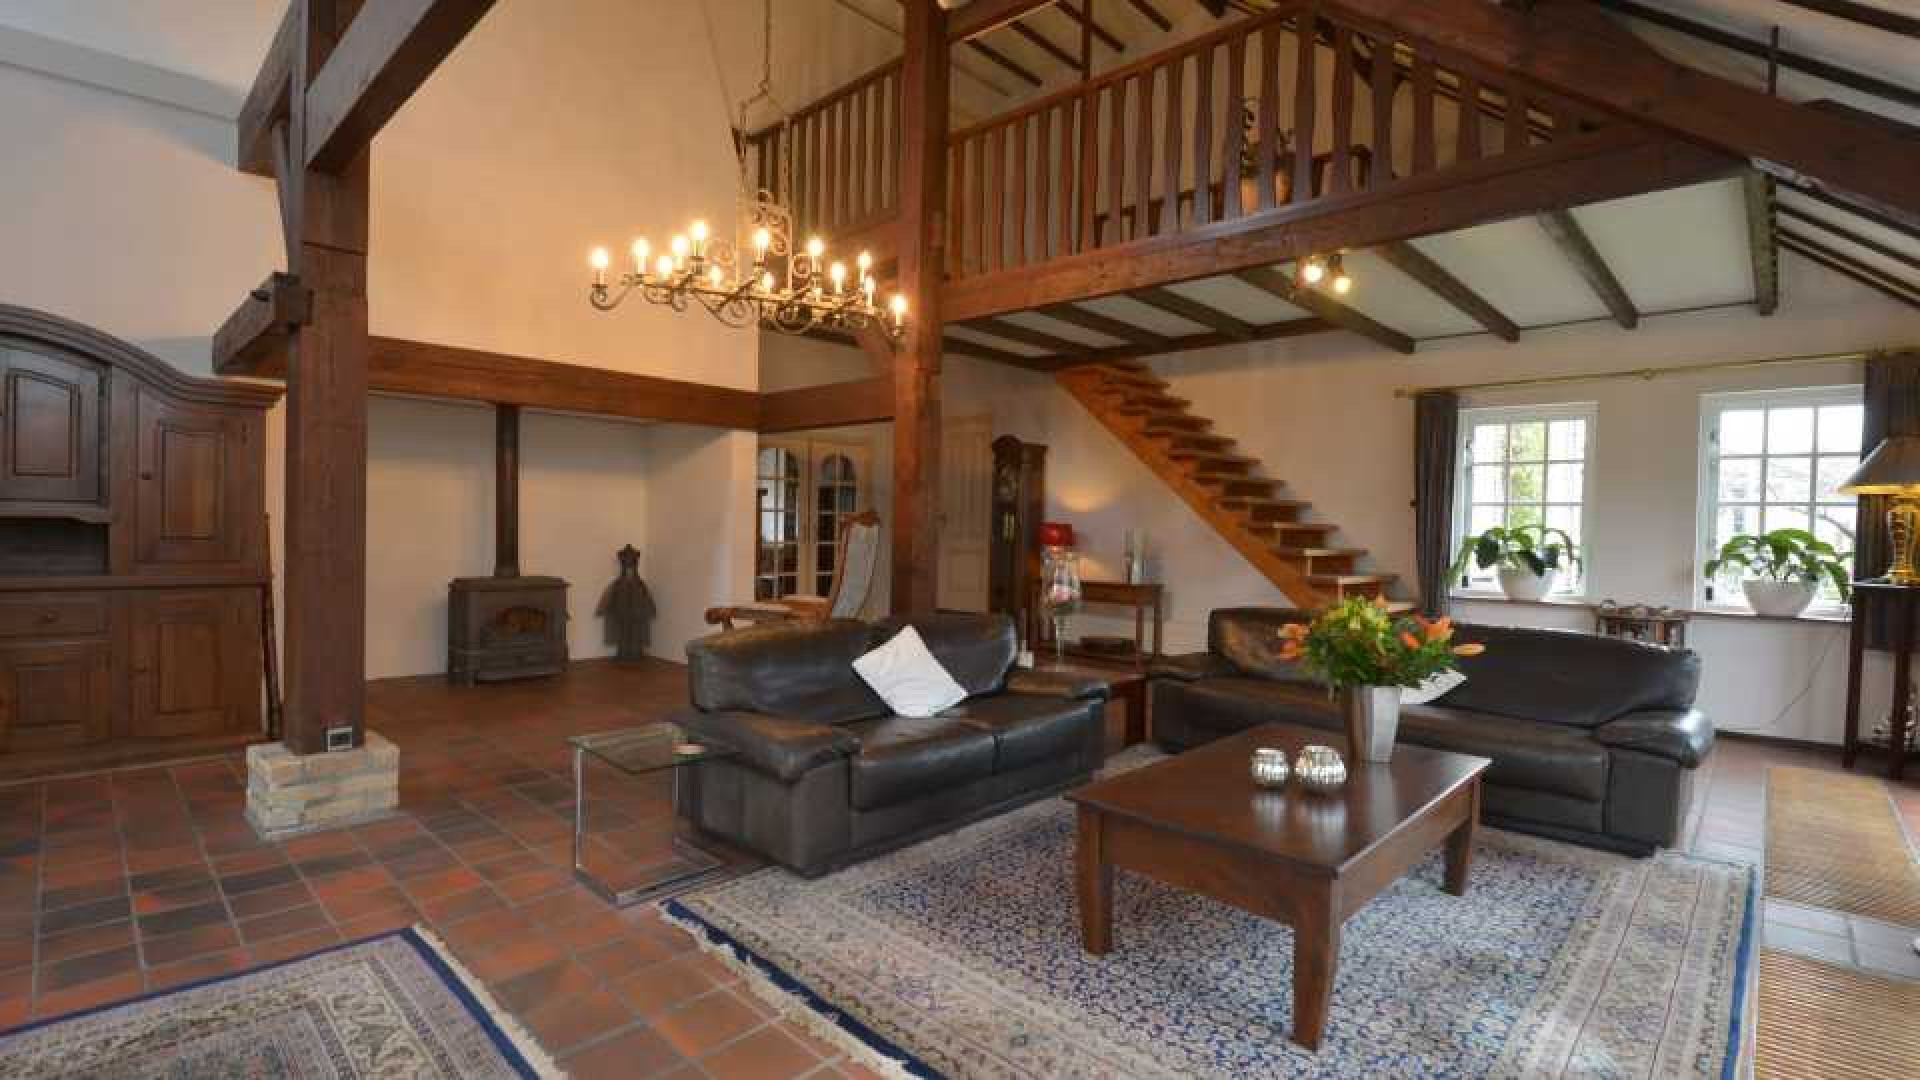 Michael van Gerwen huurt luxe woonboerderij. Zie foto's